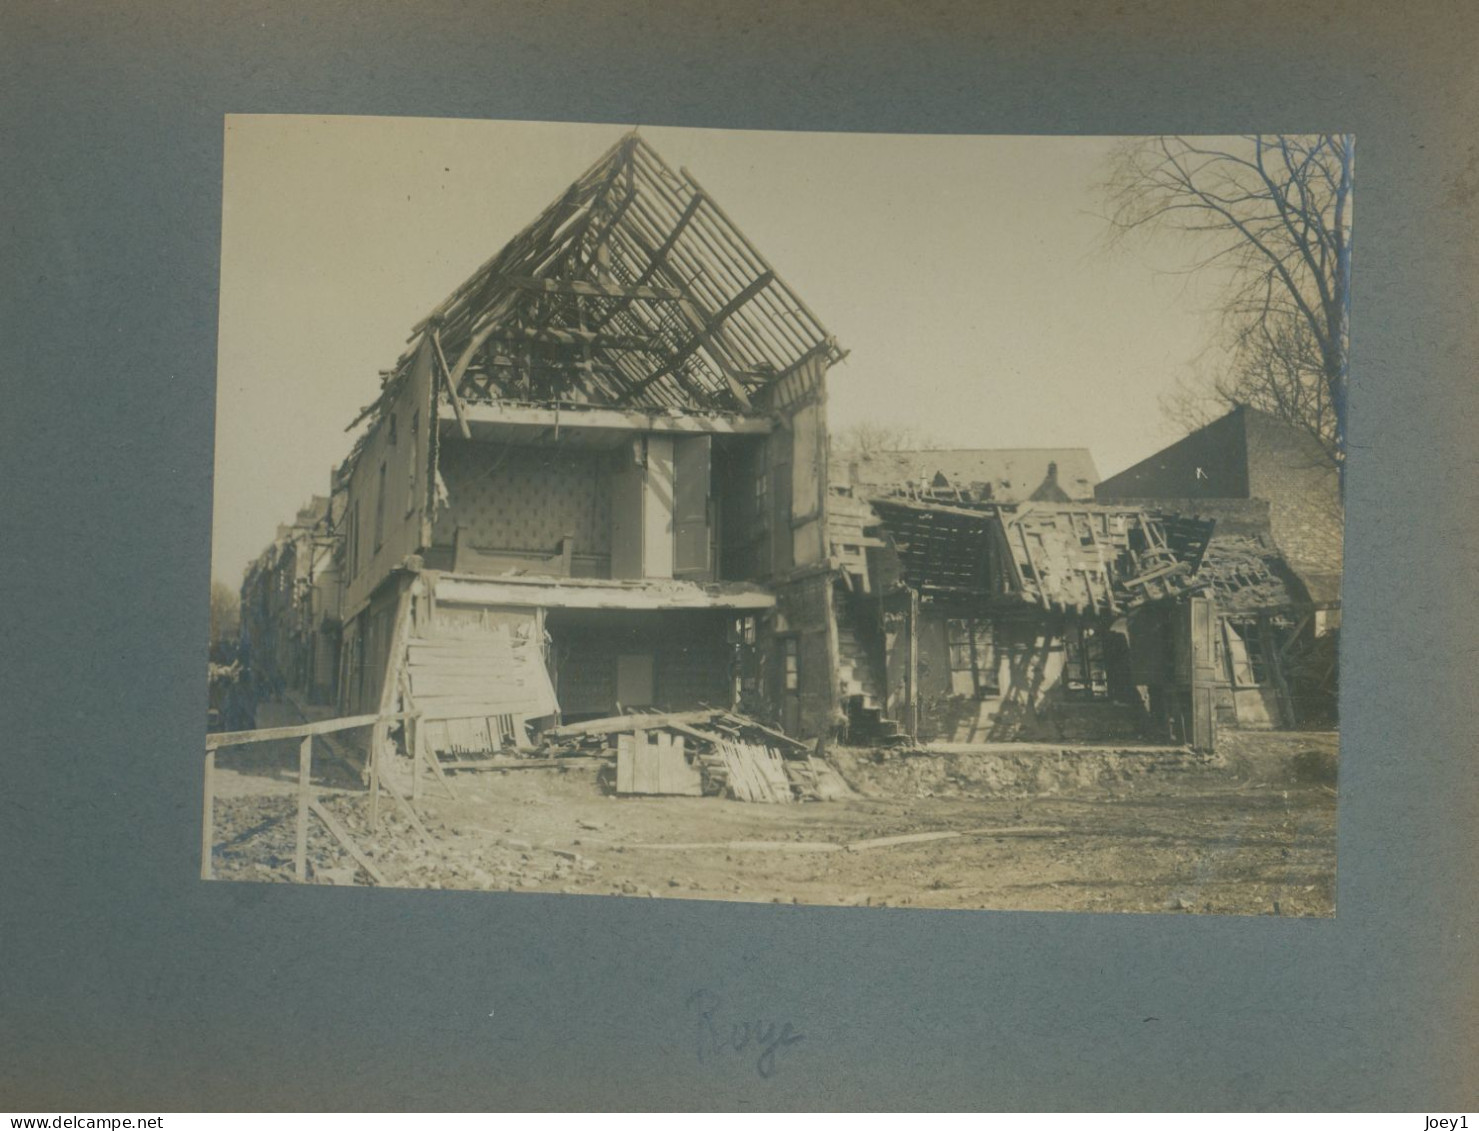 Bel Album première guerre mondiale, ville et lieux bombardés identifiés,28 photos